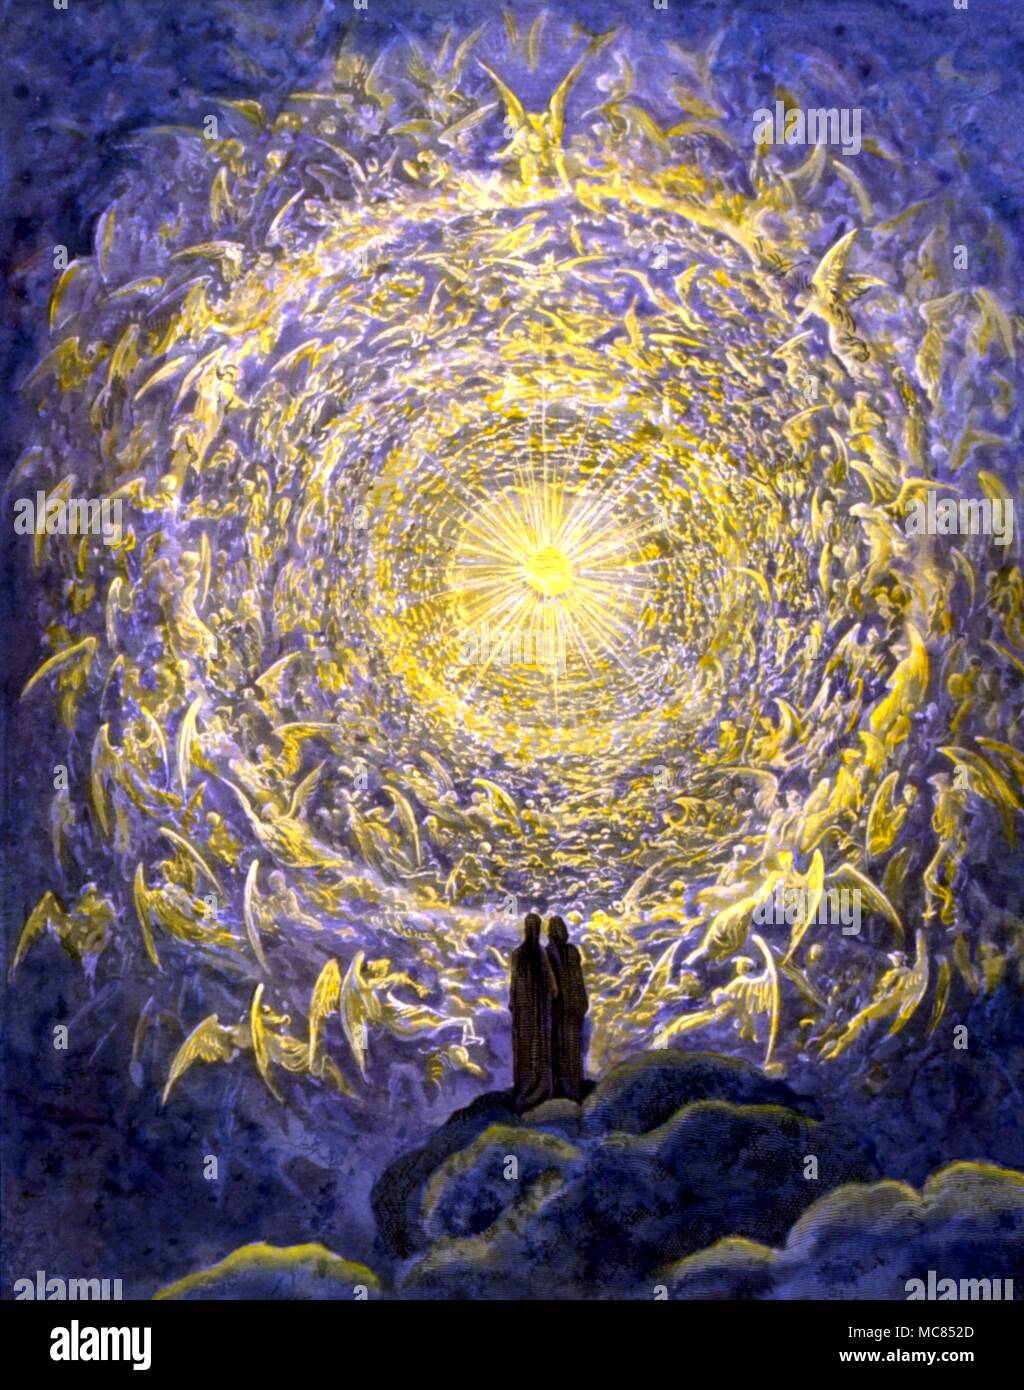 ANGELS - la vision de Dante les cercles du ciel, de l'ilustration de Dore à 'Paradiso' de la Divine Comédie Banque D'Images